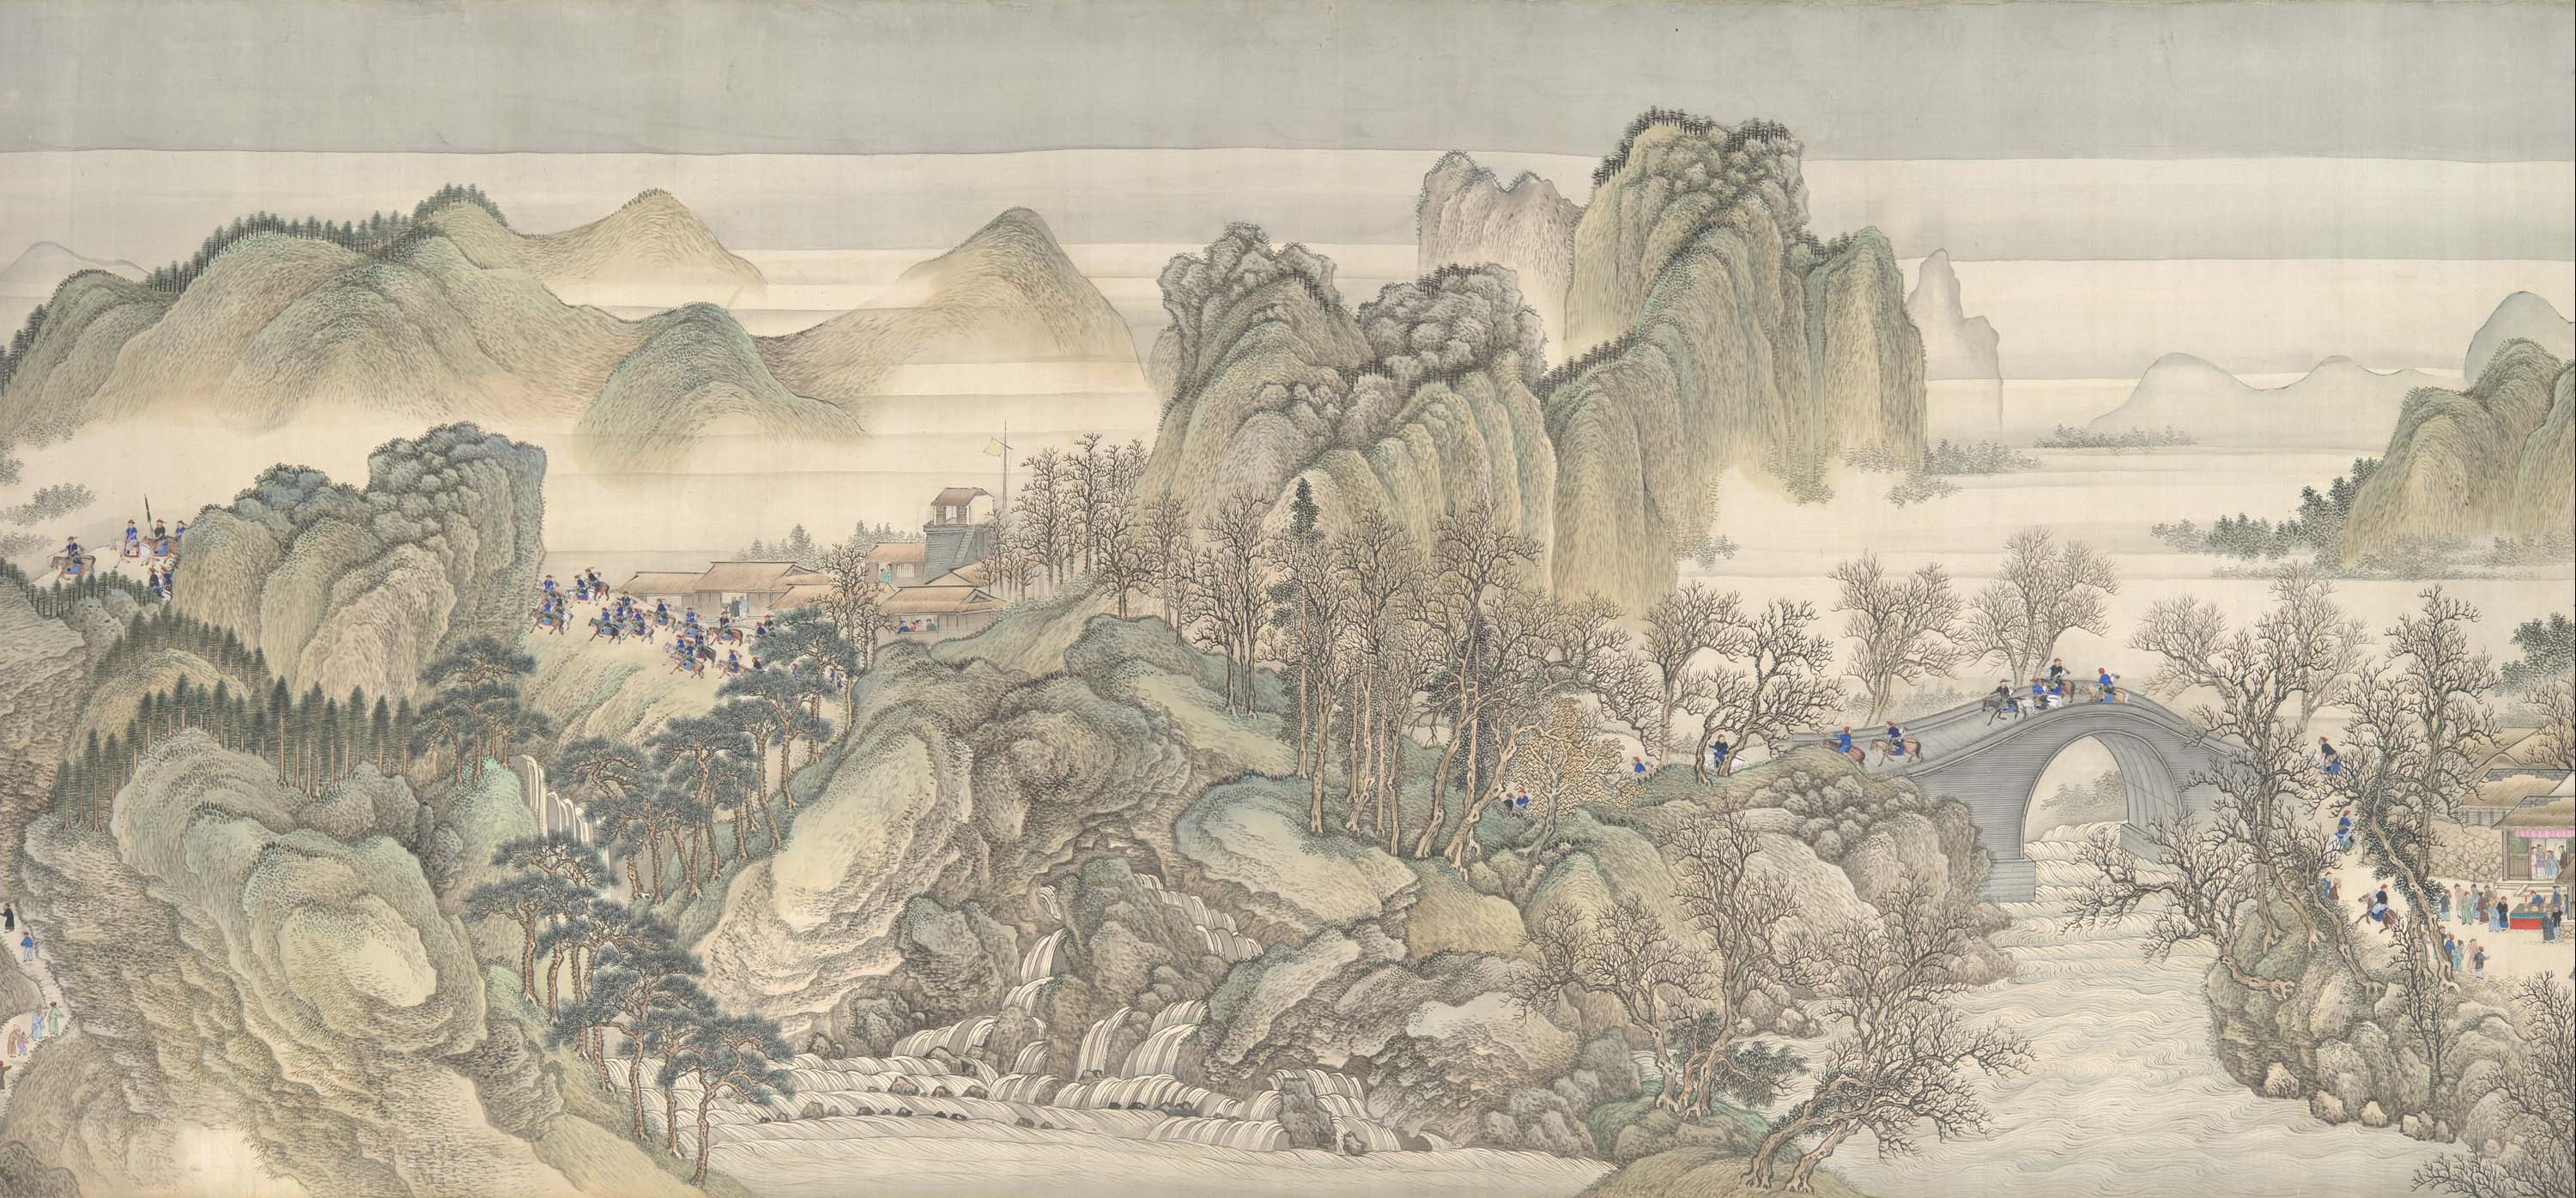 “Kangxi Emperor’s Southern Inspection Tour” by Wang Hui